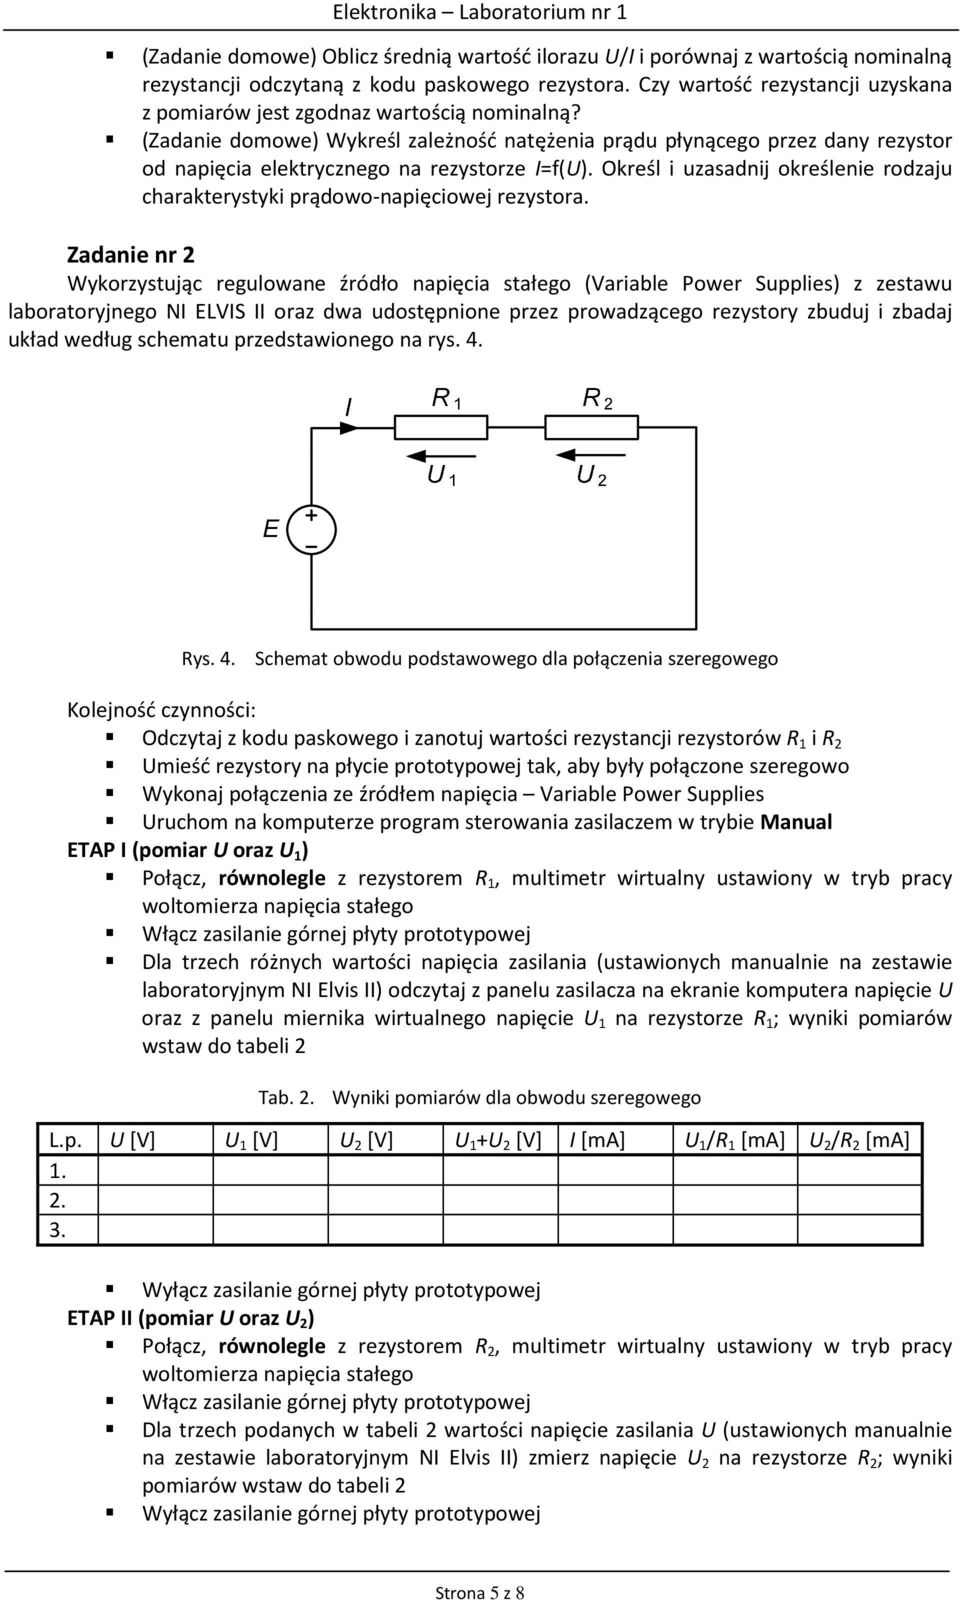 (Zadanie domowe) Wykreśl zależność natężenia prądu płynącego przez dany rezystor od napięcia elektrycznego na rezystorze I=f(U).